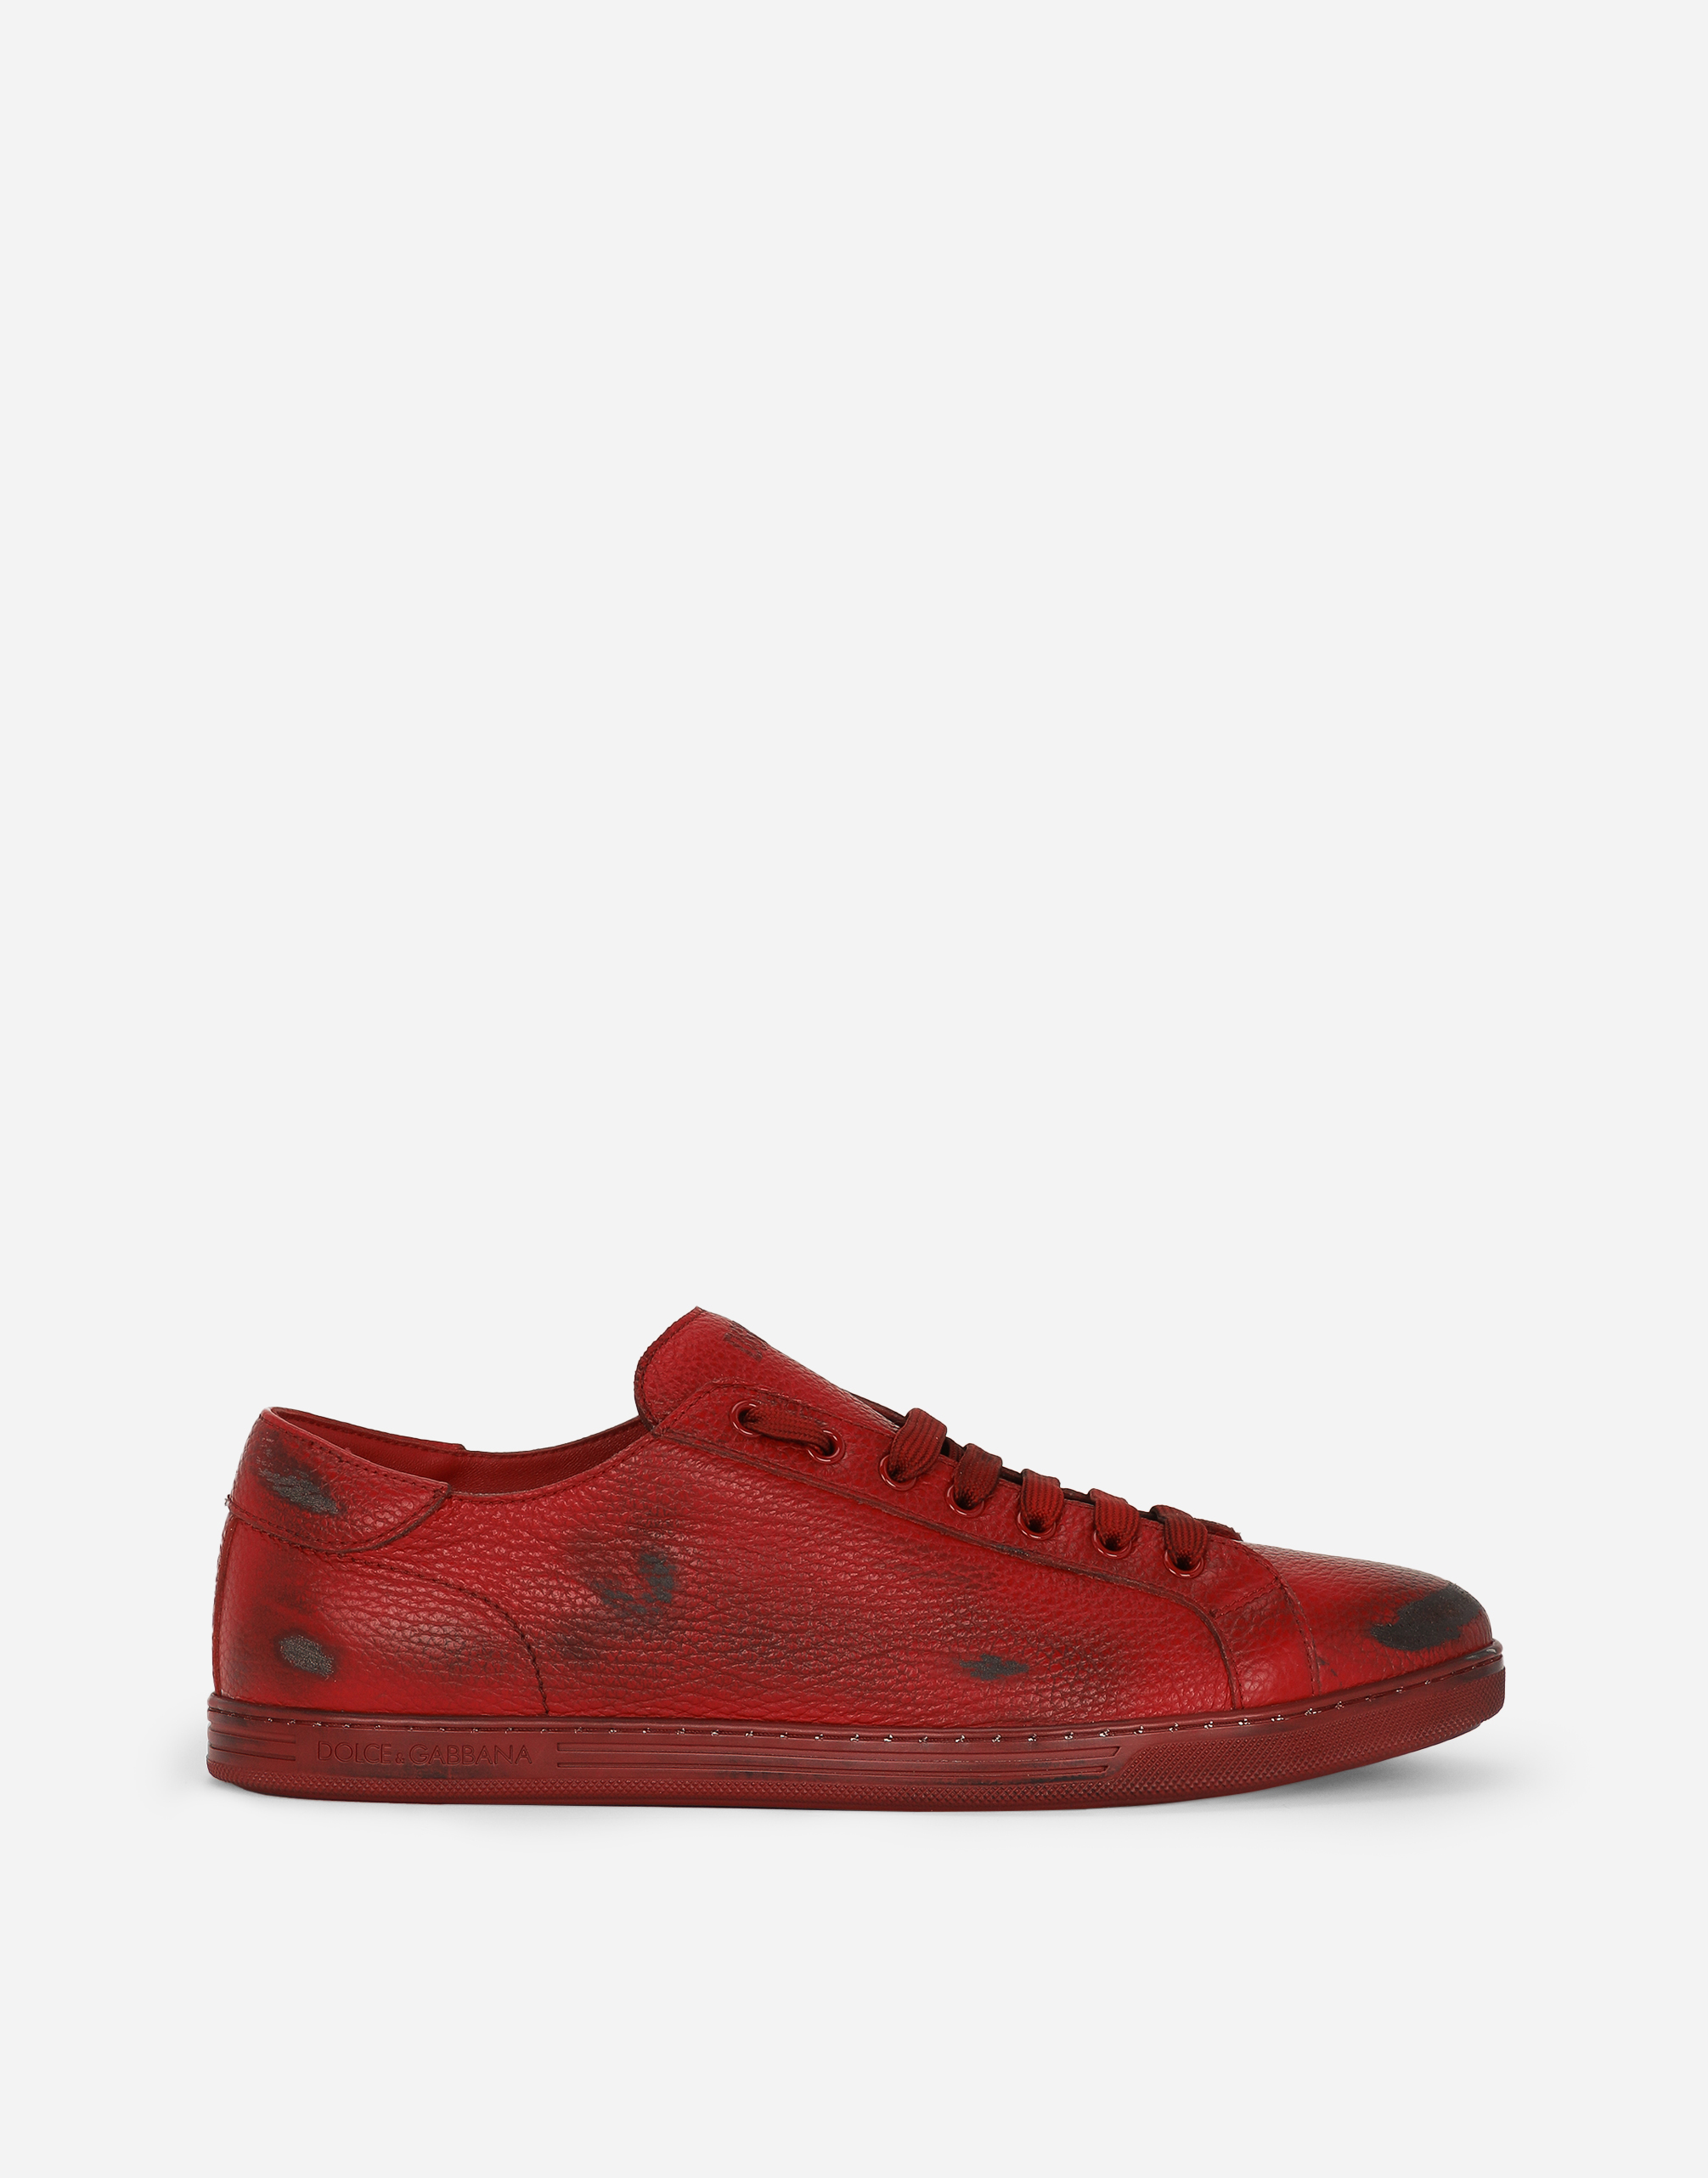 Saint Tropez deerskin sneakers in Red for Men | Dolce&Gabbana®